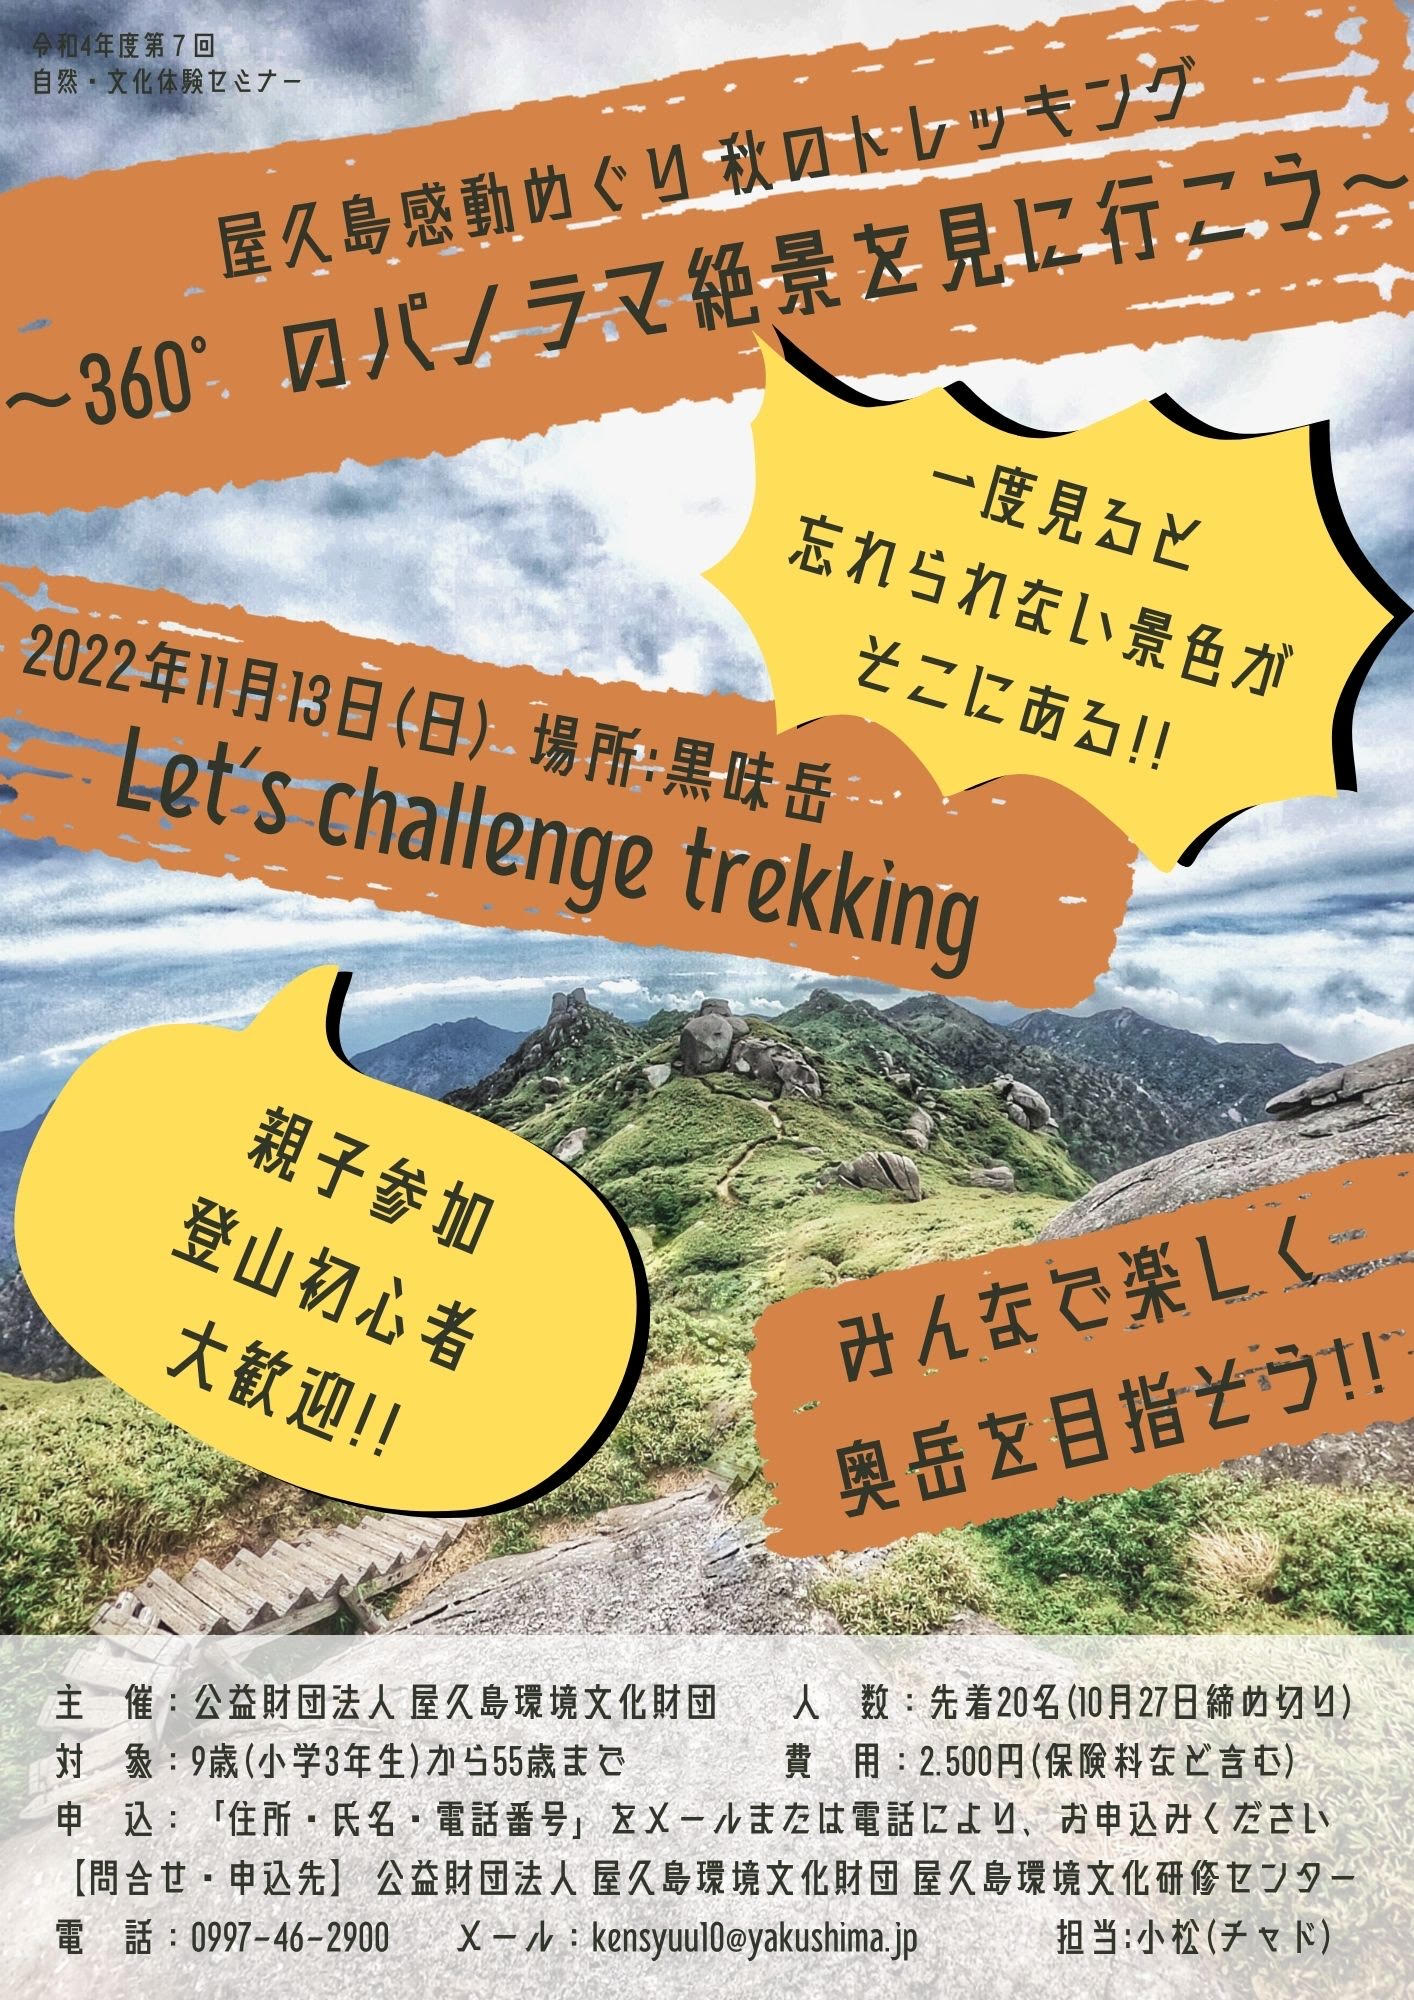 屋久島感動めぐり 秋のトレッキング～360°のパノラマ絶景を見に行こう～